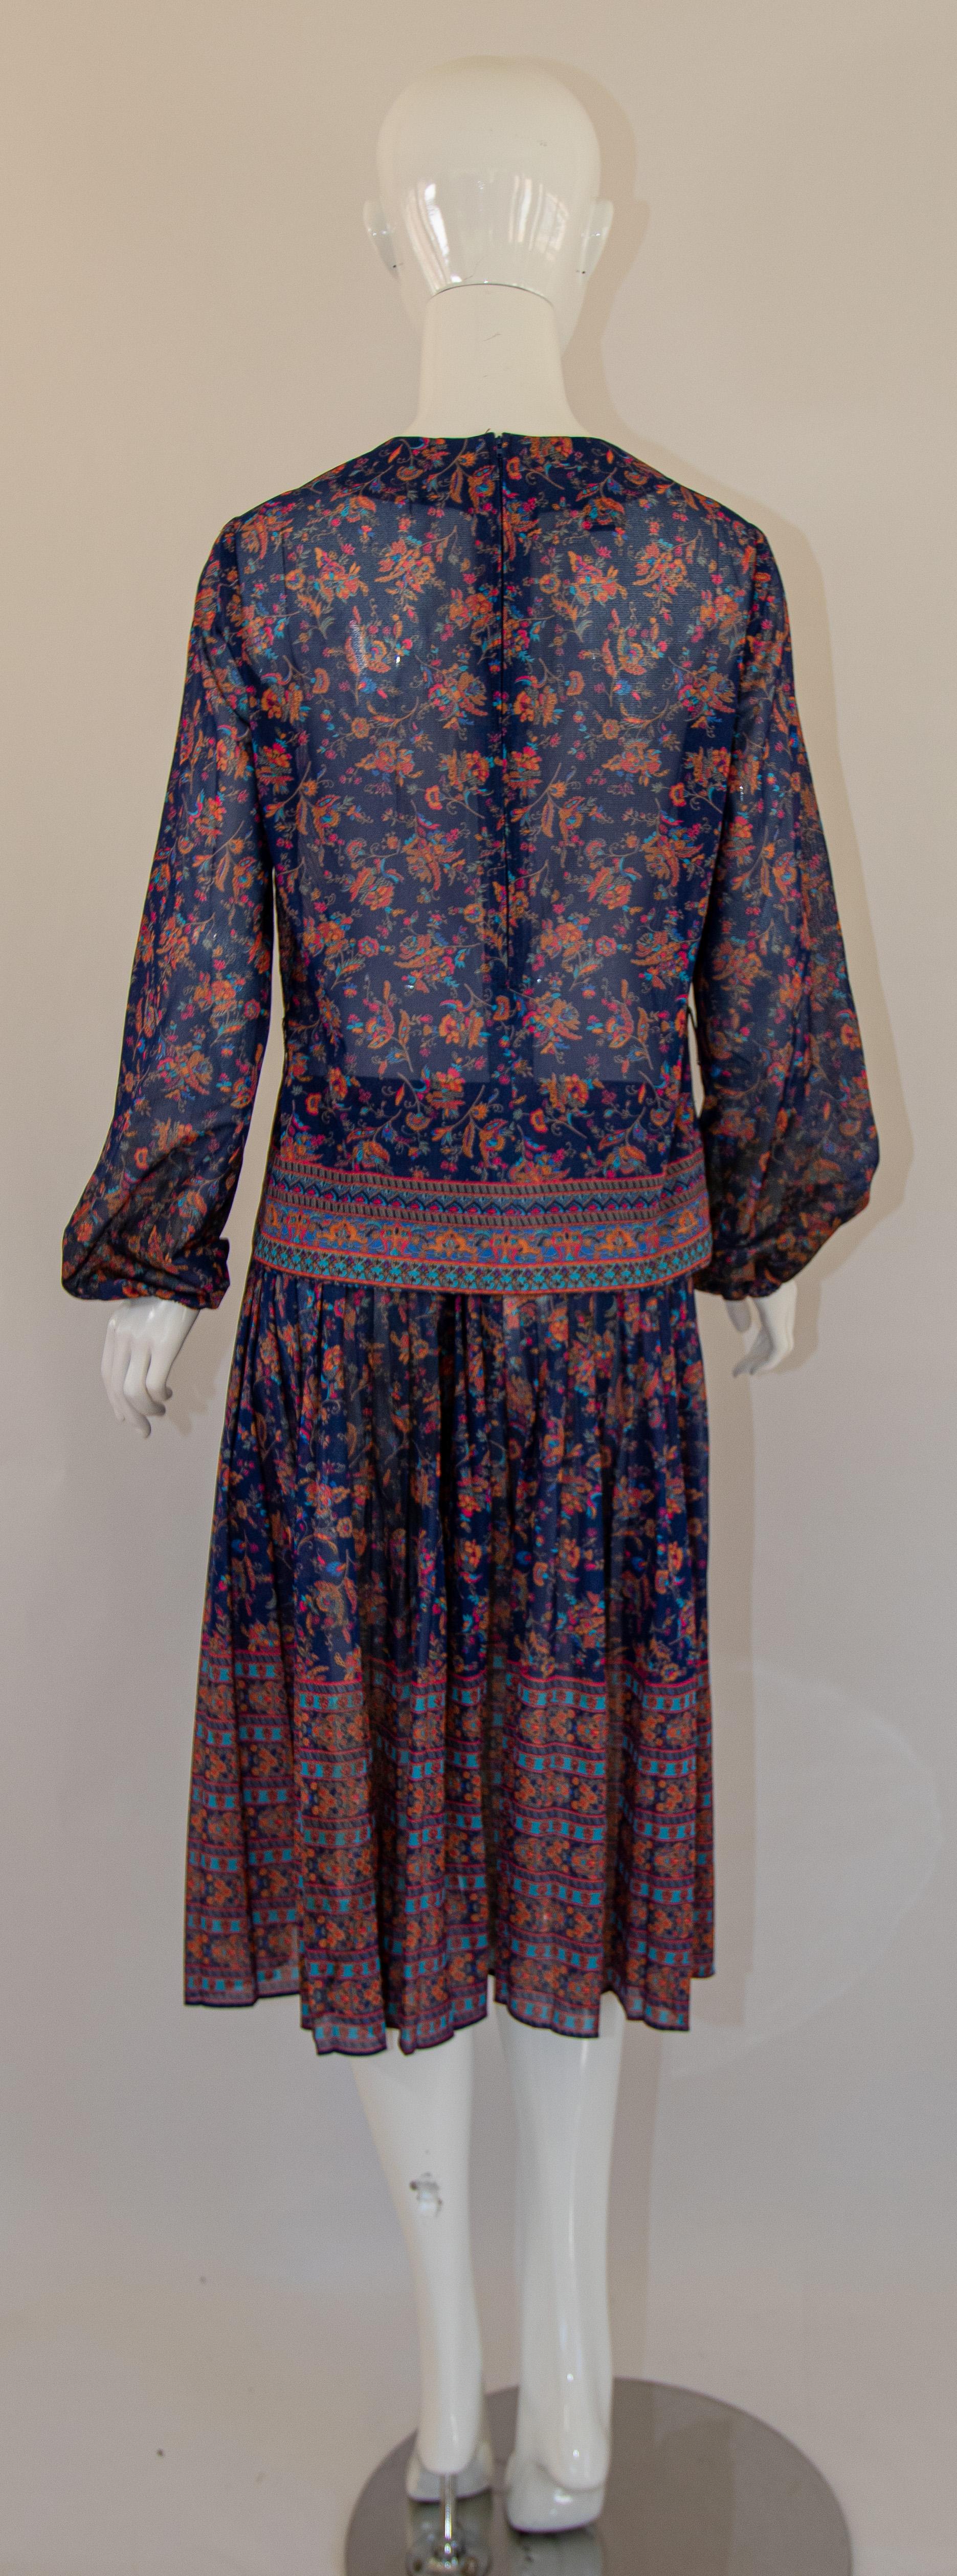 1970s Vintage Bohemian Floral Printed Dress Miss Magnin at I. Magnin For Sale 5